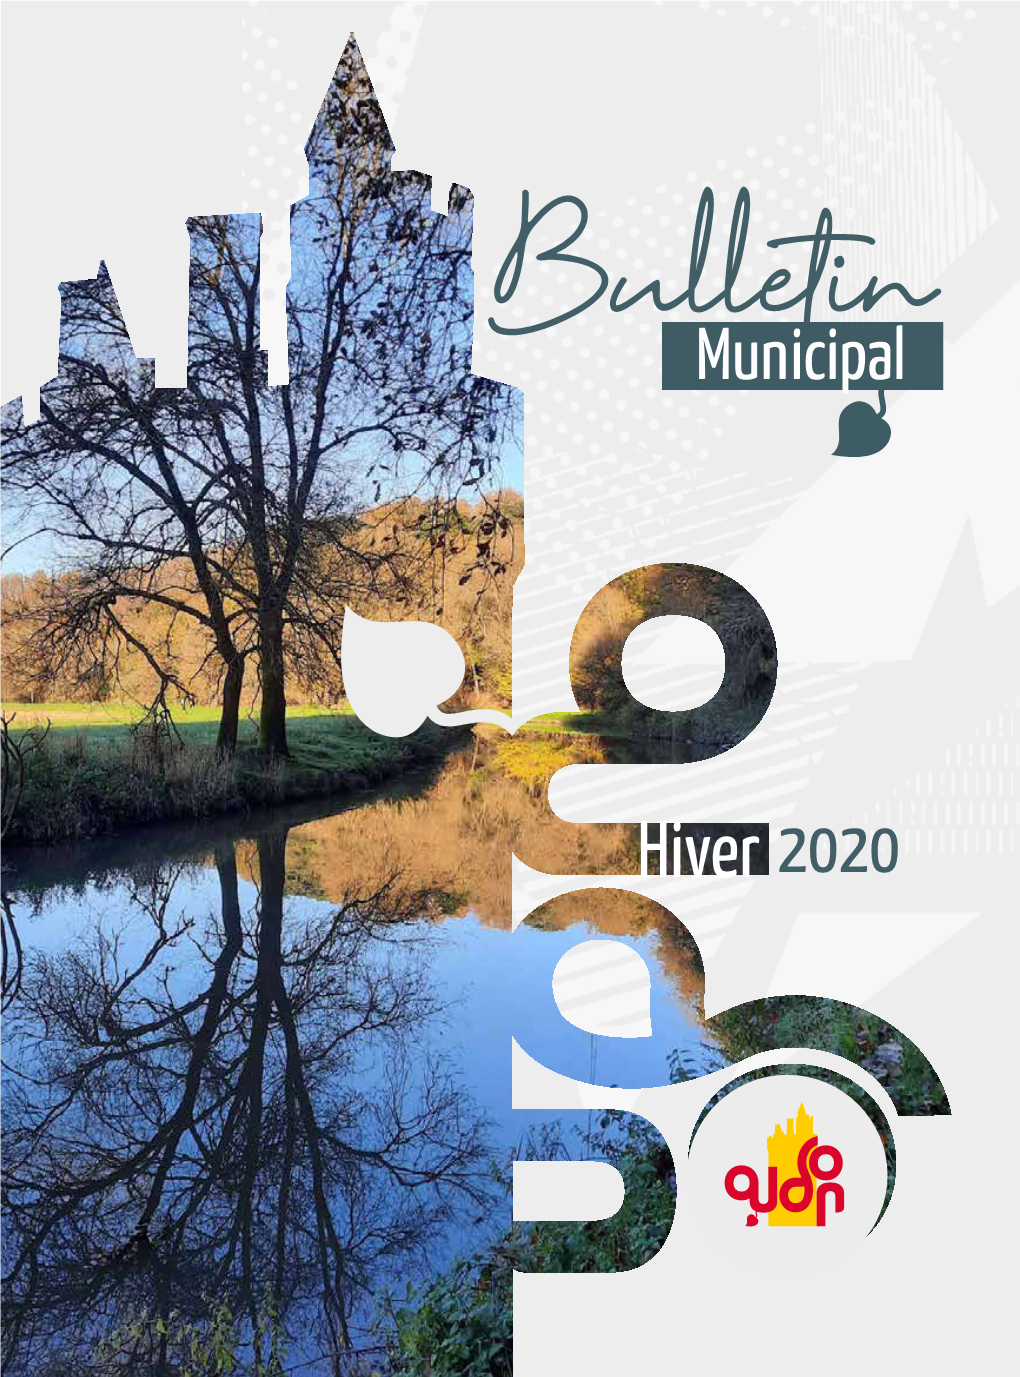 2020 Municipal